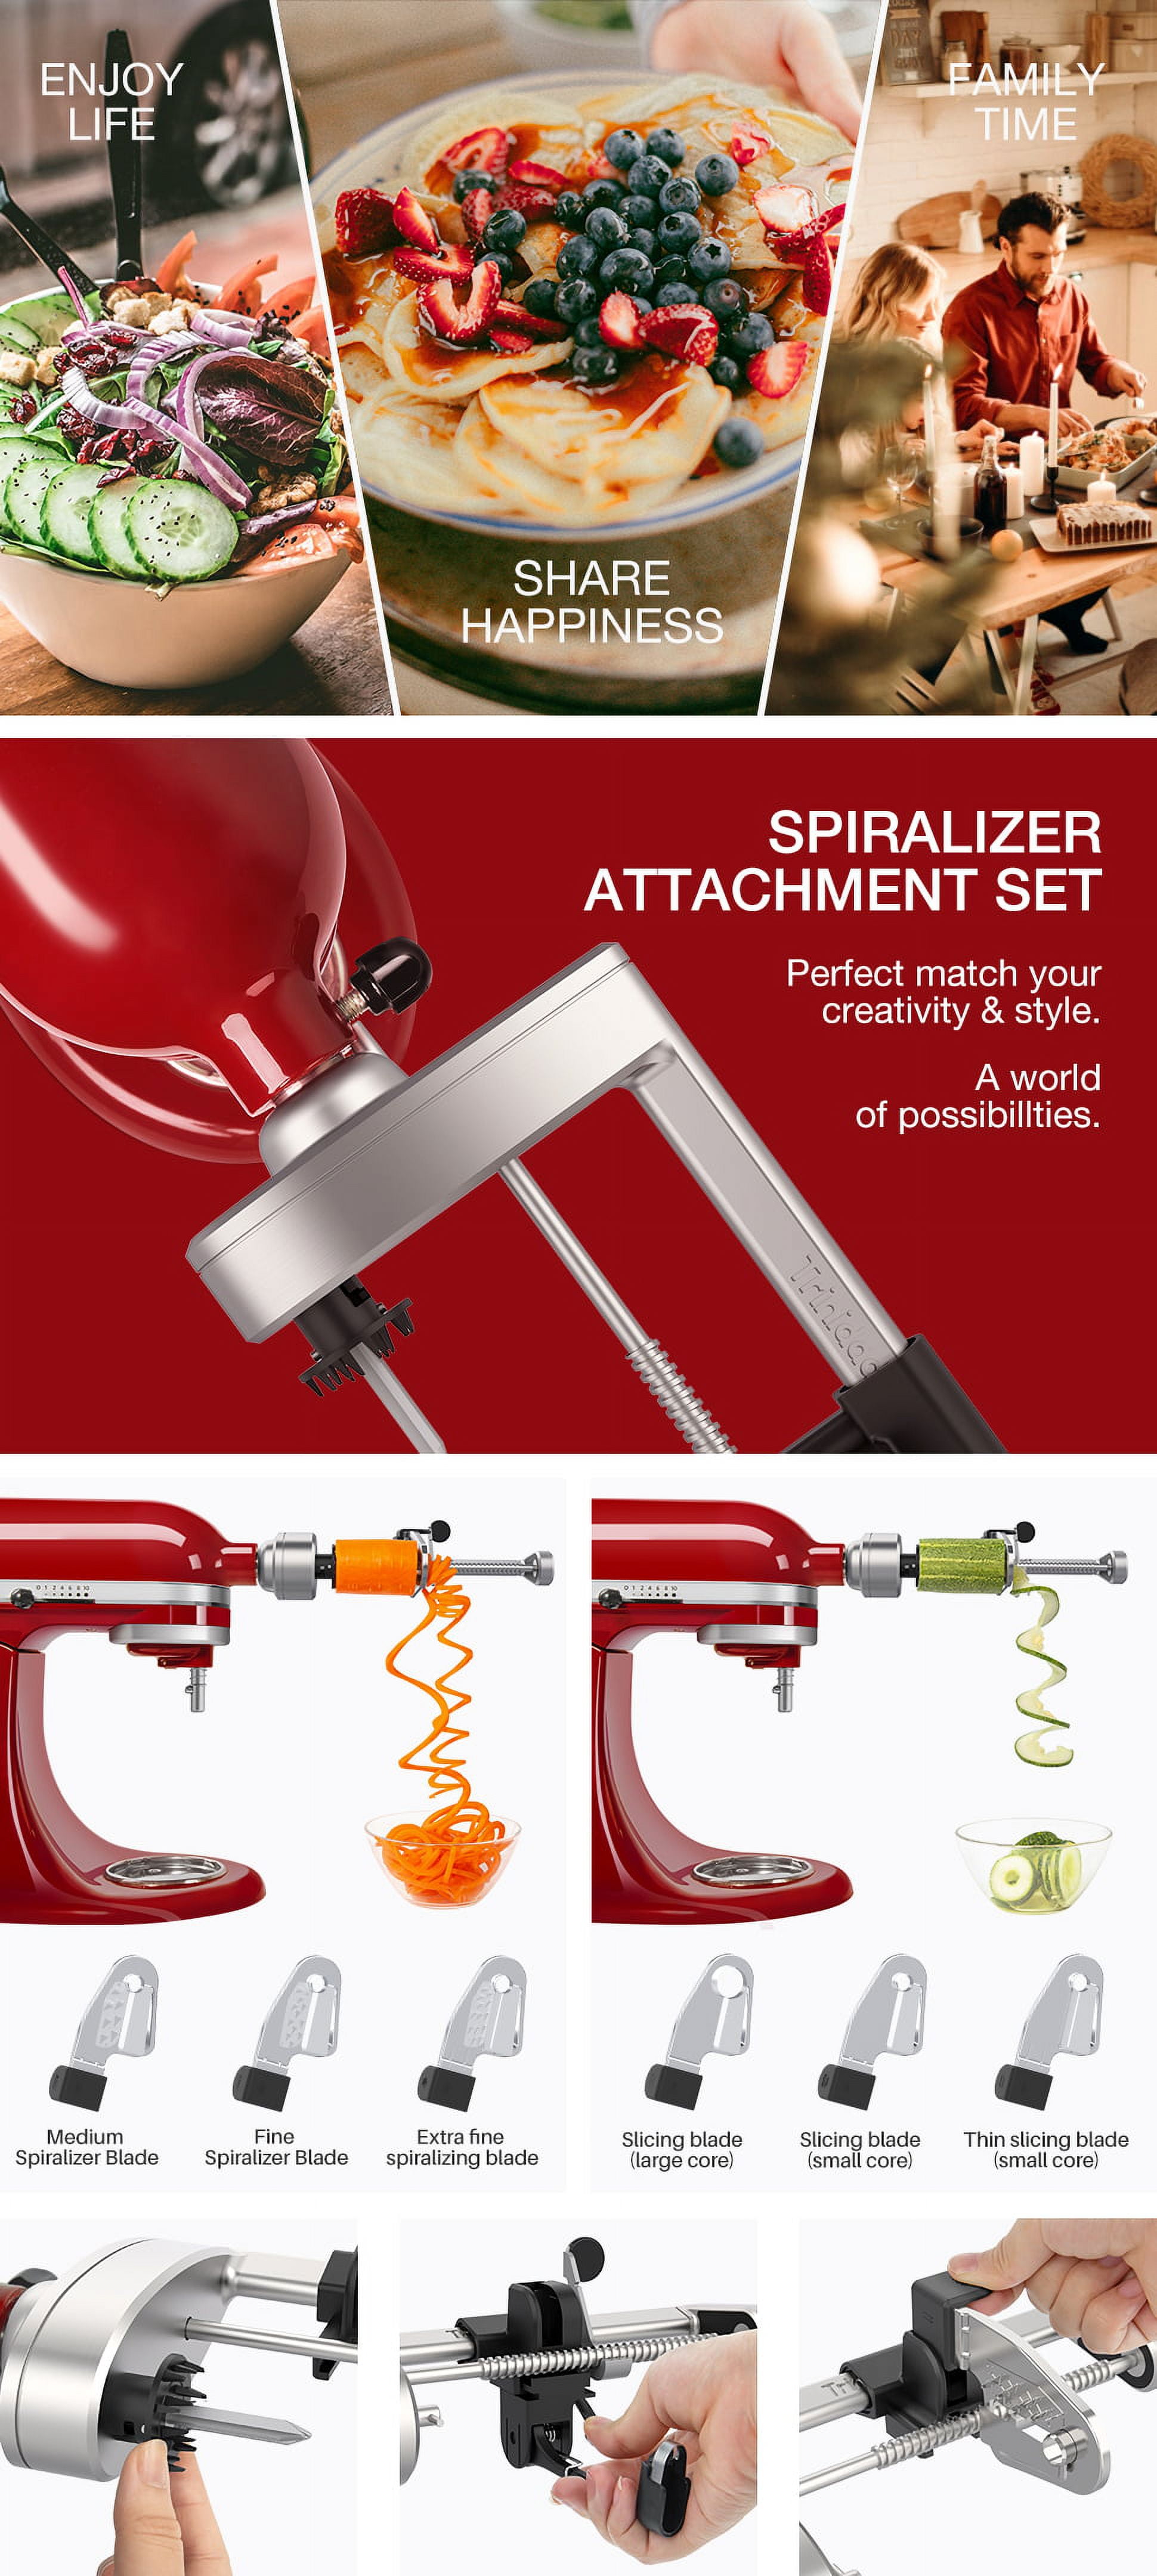 KitchenAid Spiralizer Attachment - Bed Bath & Beyond - 10634060